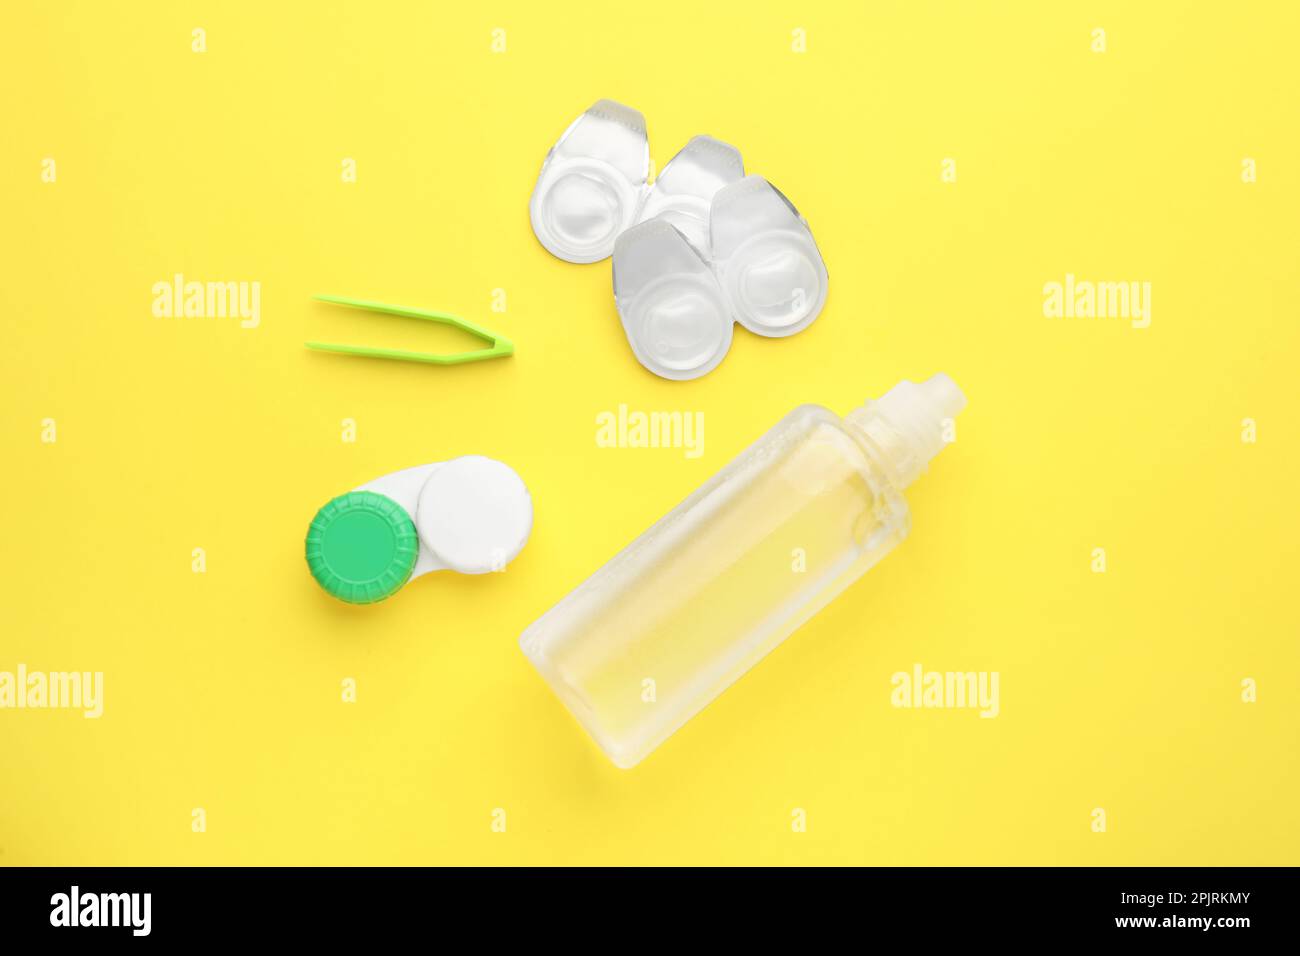 Pakete mit Kontaktlinsen, Tasche, Pinzette und Tropfen auf gelbem  Hintergrund, flach liegend Stockfotografie - Alamy